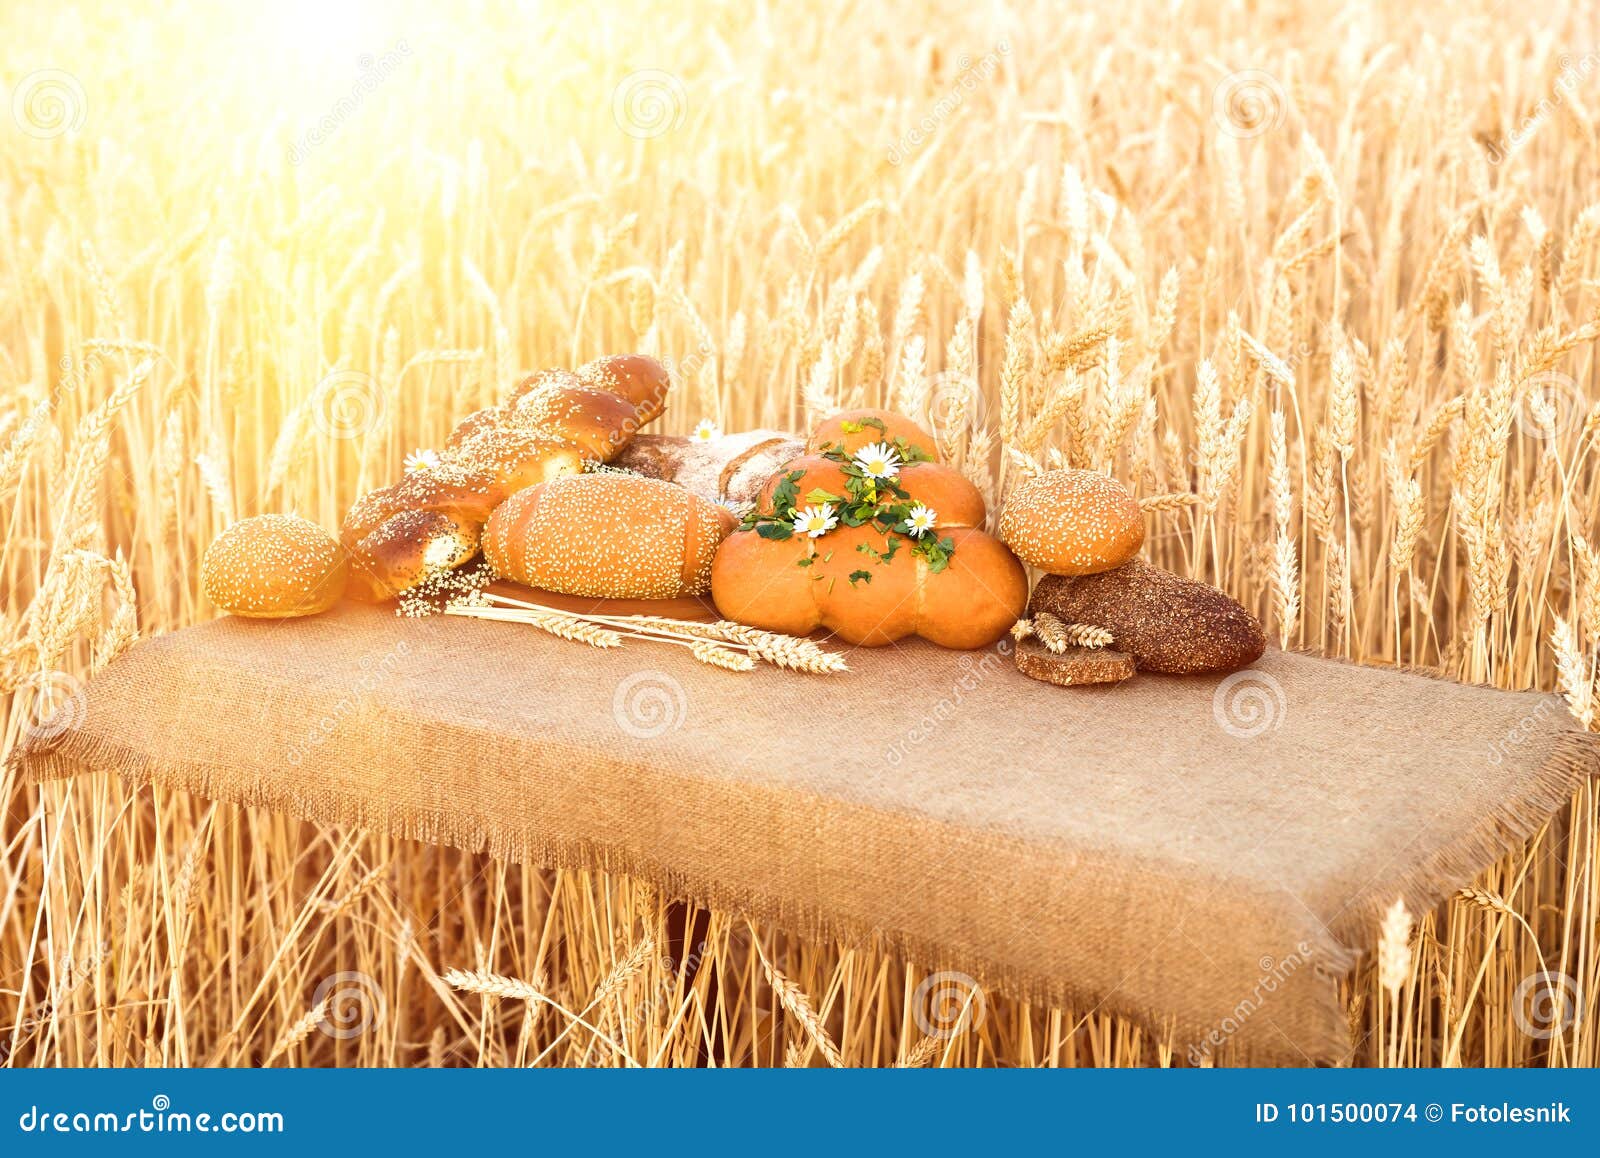 Prodotti della panificazione che si trovano su una tavola davanti ad un giacimento di grano, primo piano